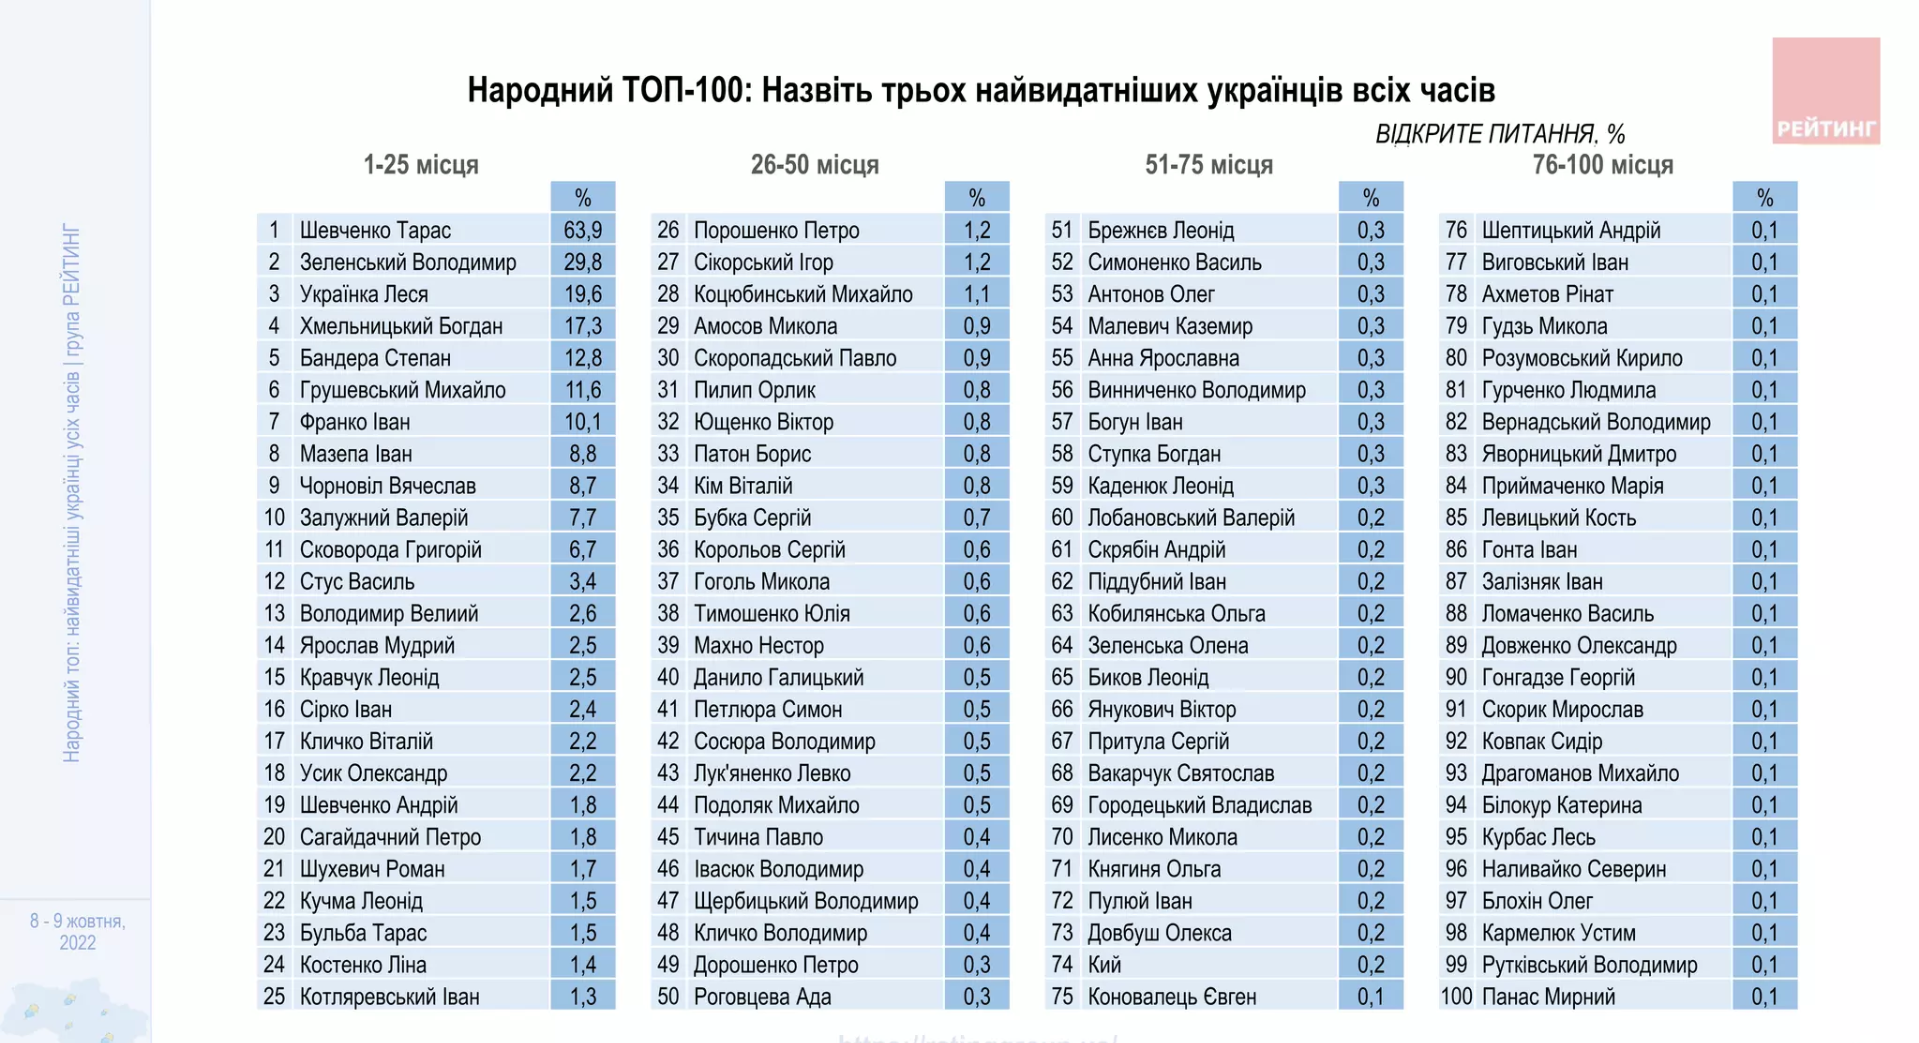 Бандера и Залужный попали в десятку величайших украинцев: результаты опроса